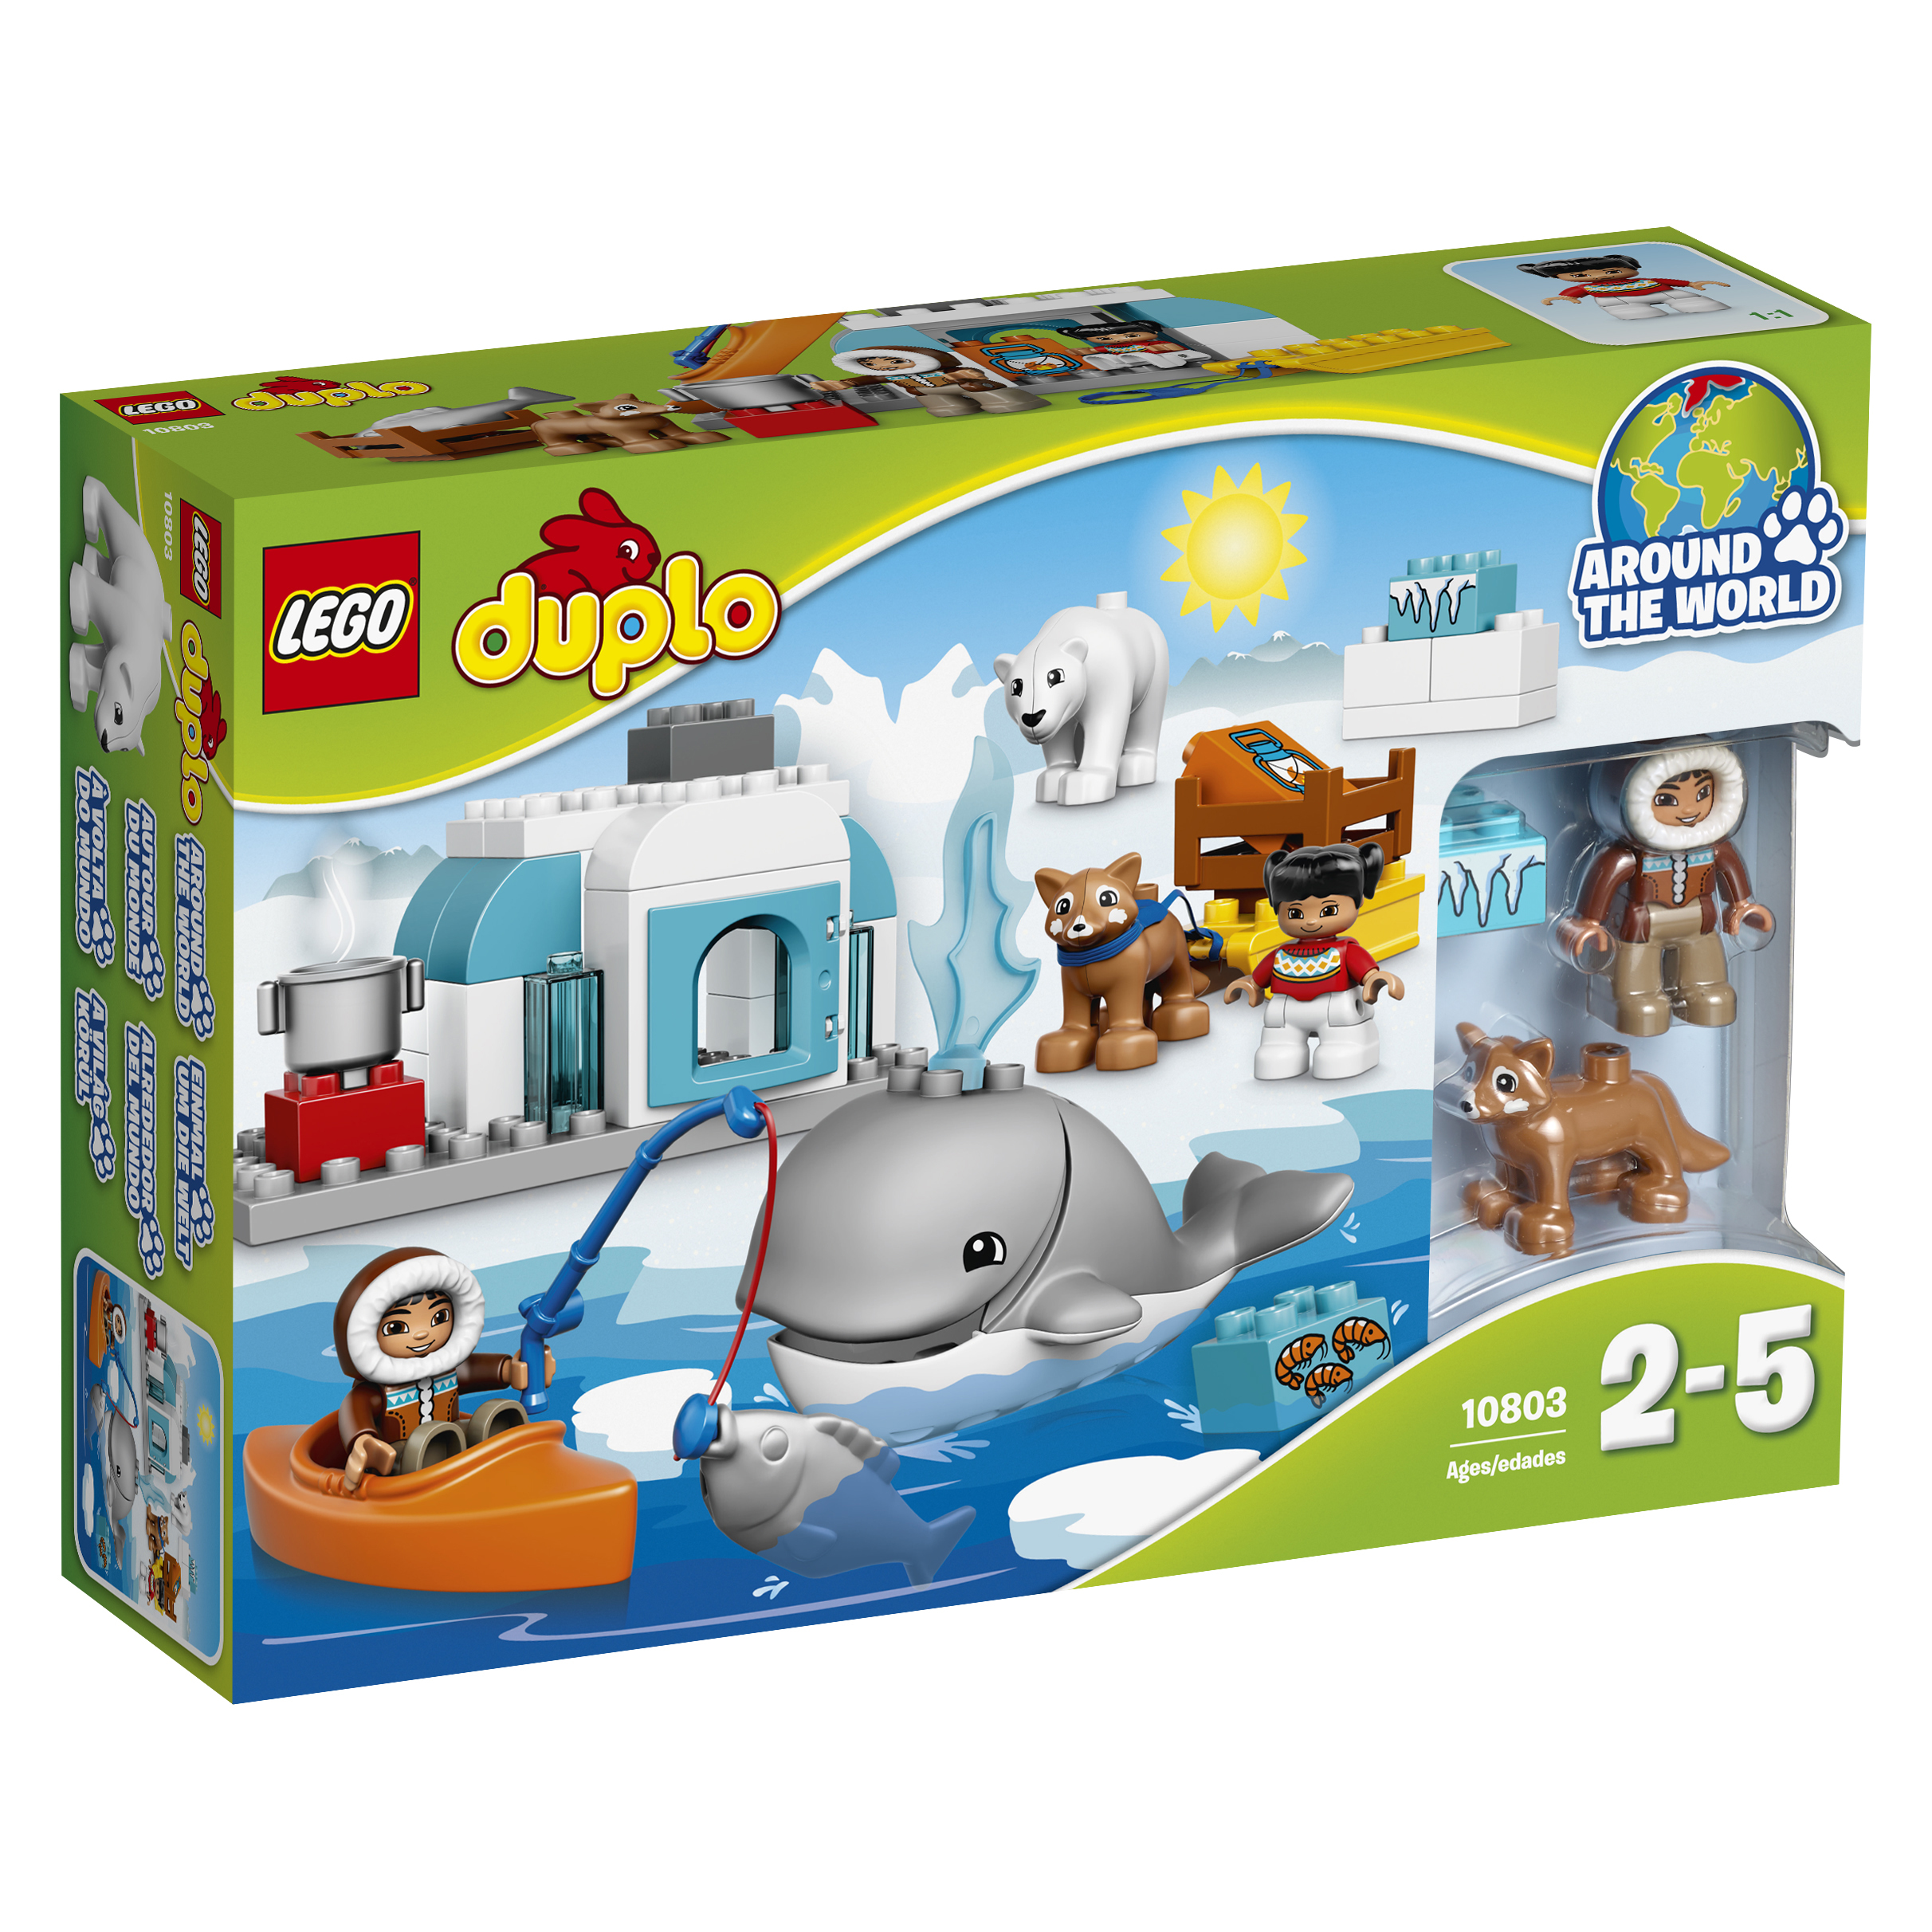 LEGO DUPLO Arktis - 10803